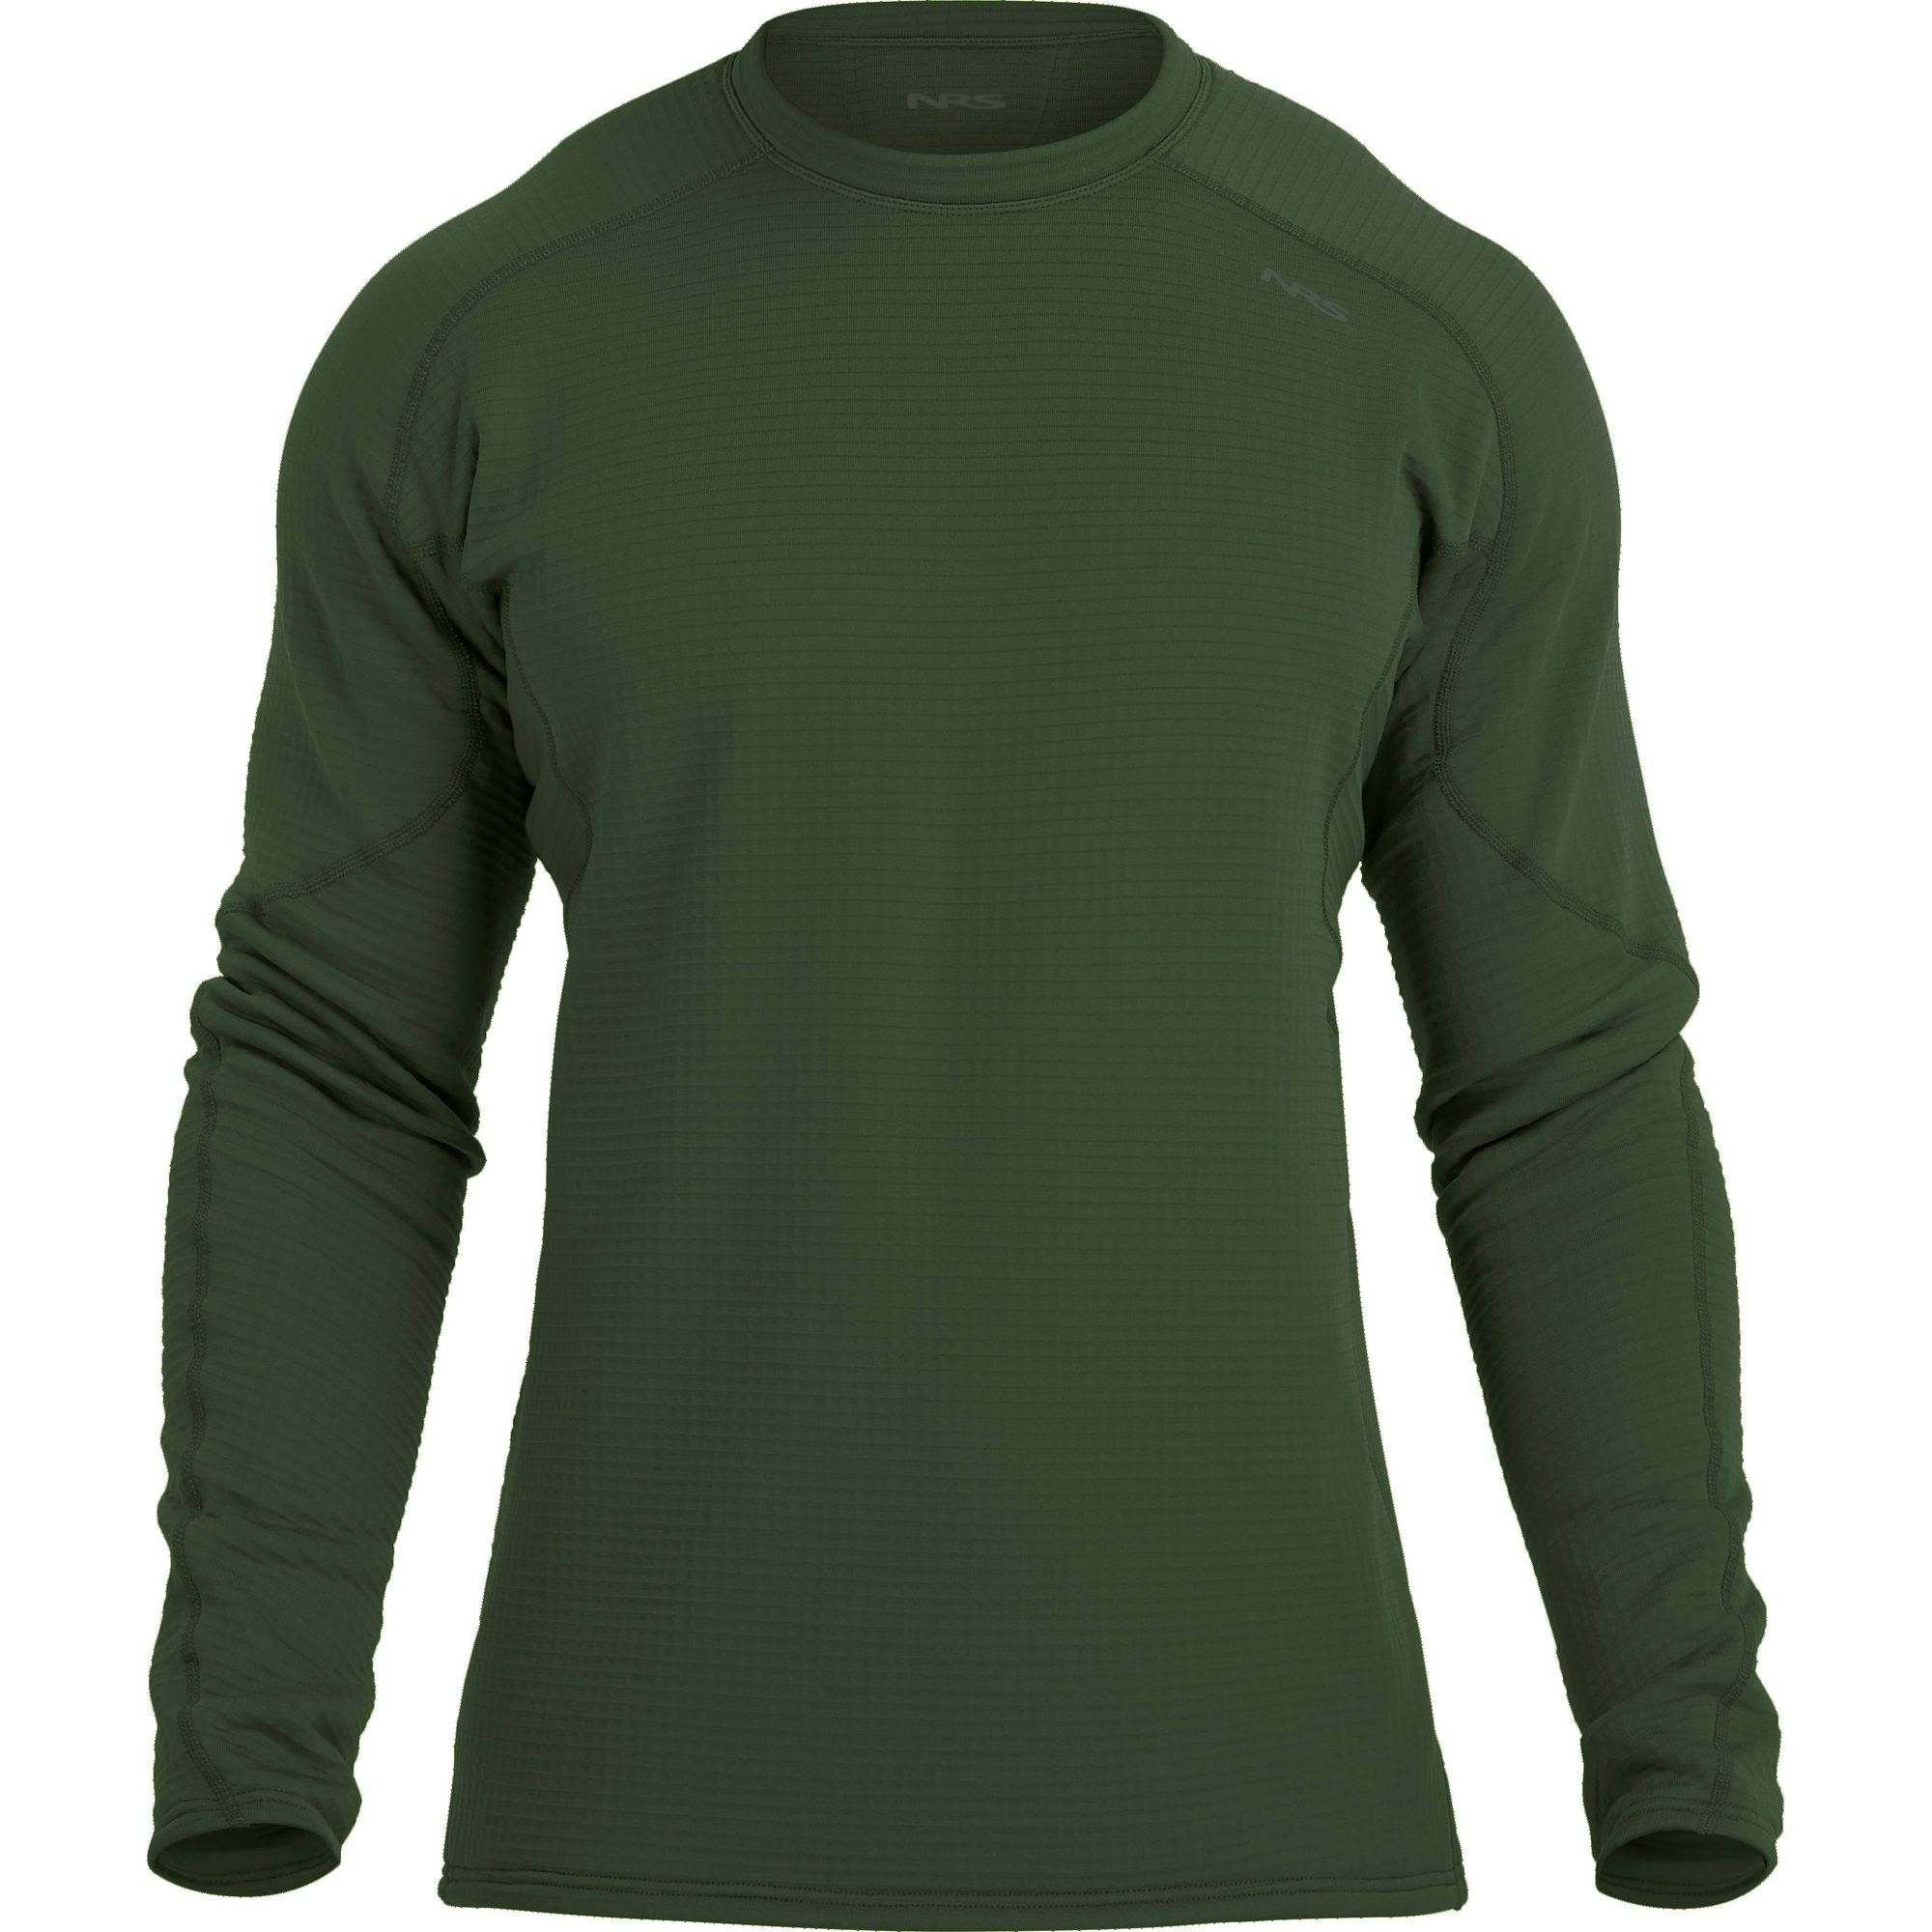 NRS Men's Lightweight Shirt NEW Fleece Pullover Long Sleeve